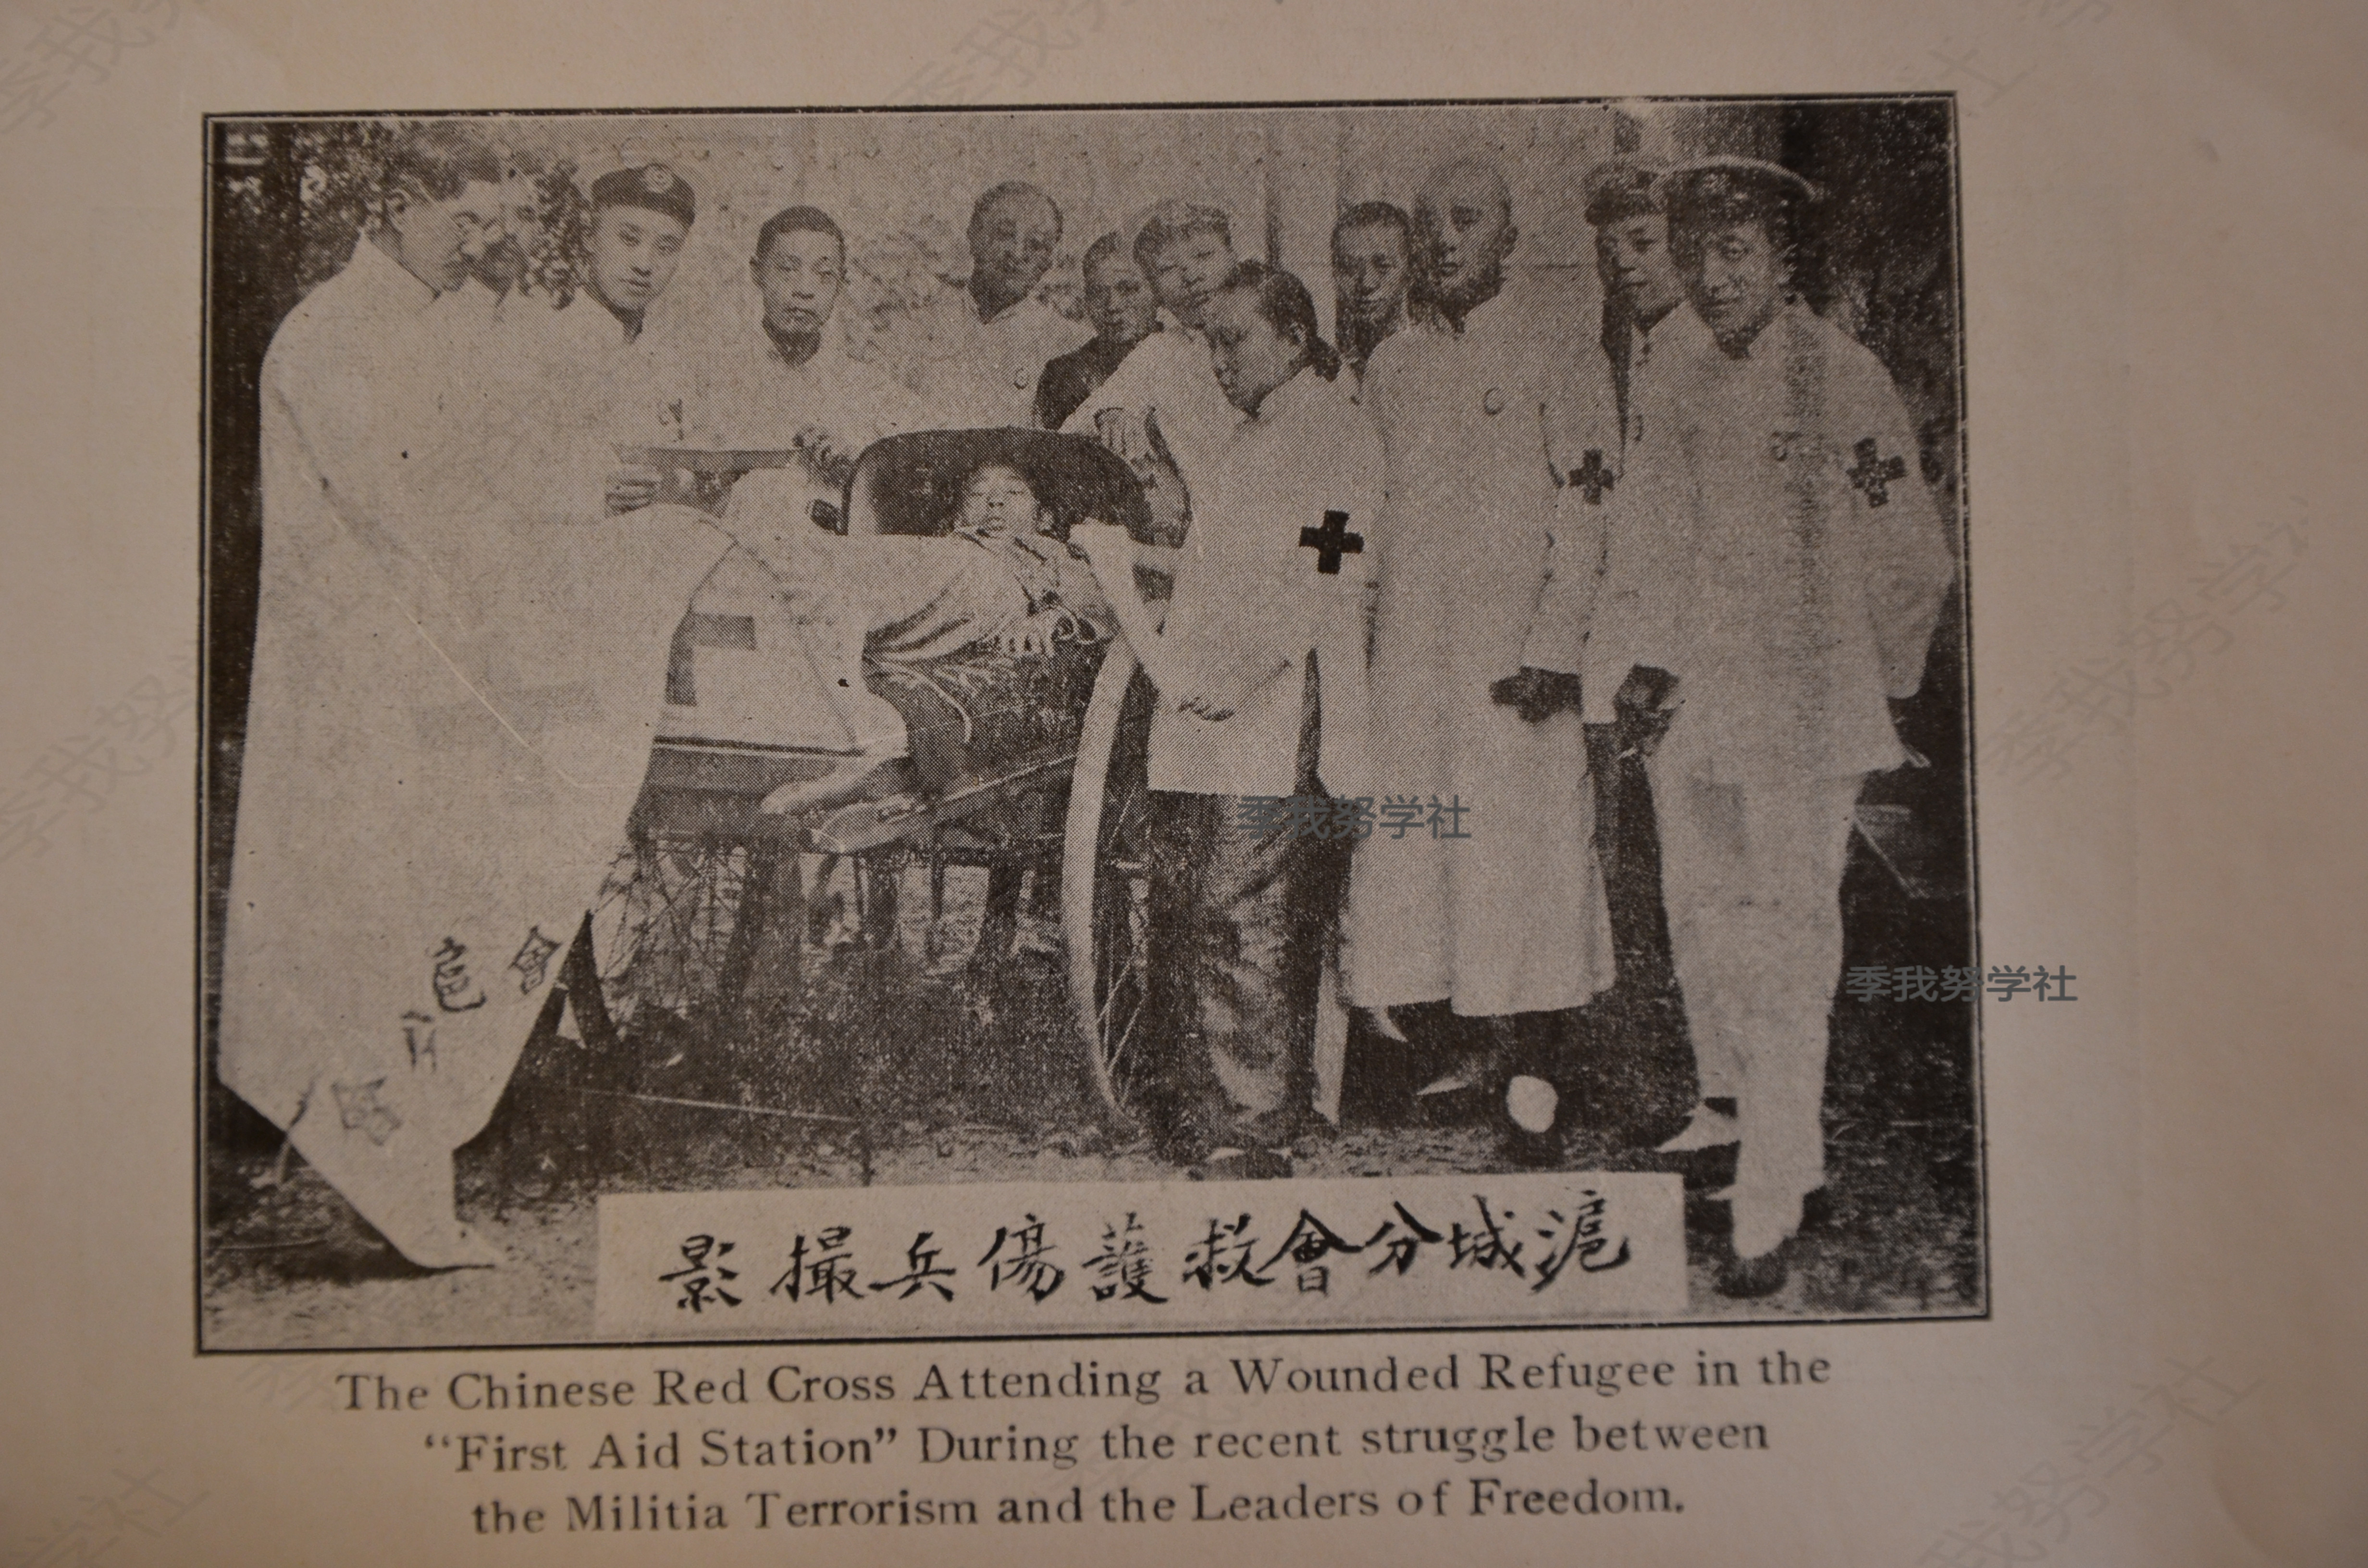 全国首发:民国时期中国红十字会救助伤兵组图 联合国欧洲总部图书馆馆